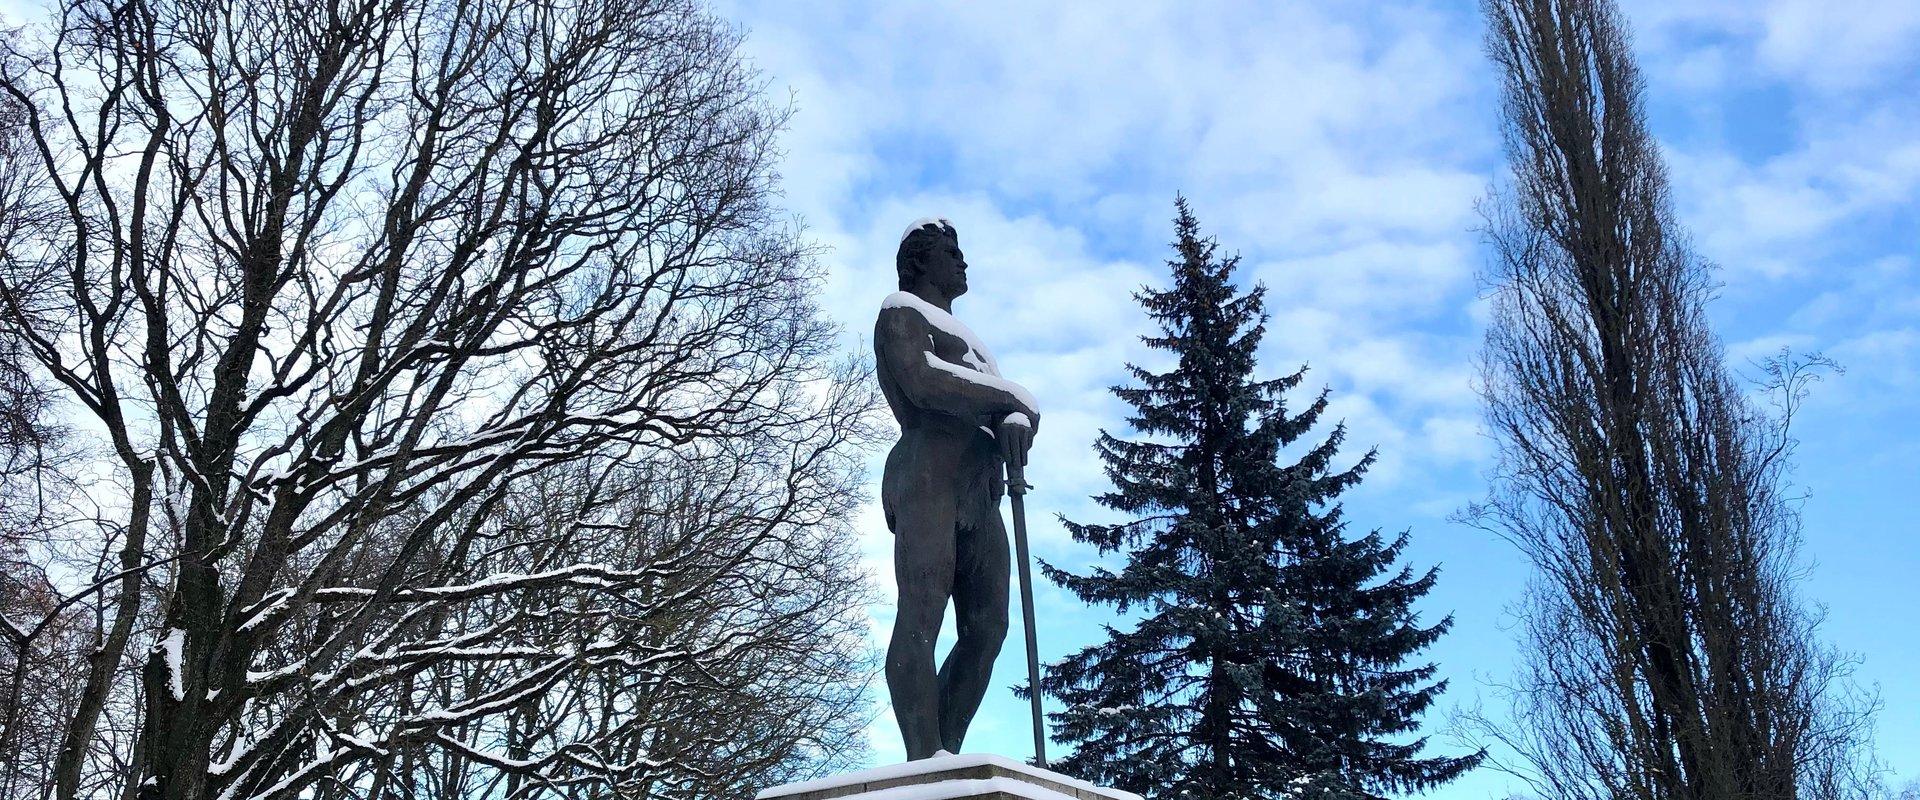 Kalevipoeg – Denkmal für den Freiheitskrieg